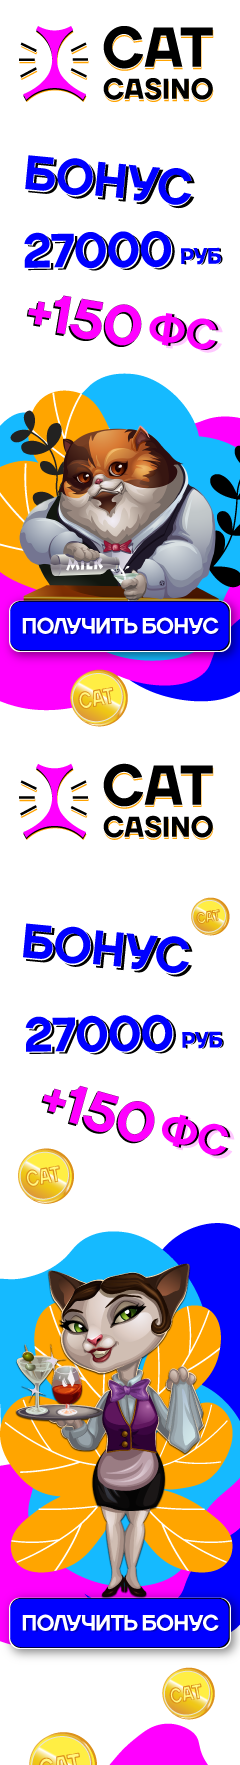 Cat カジノ